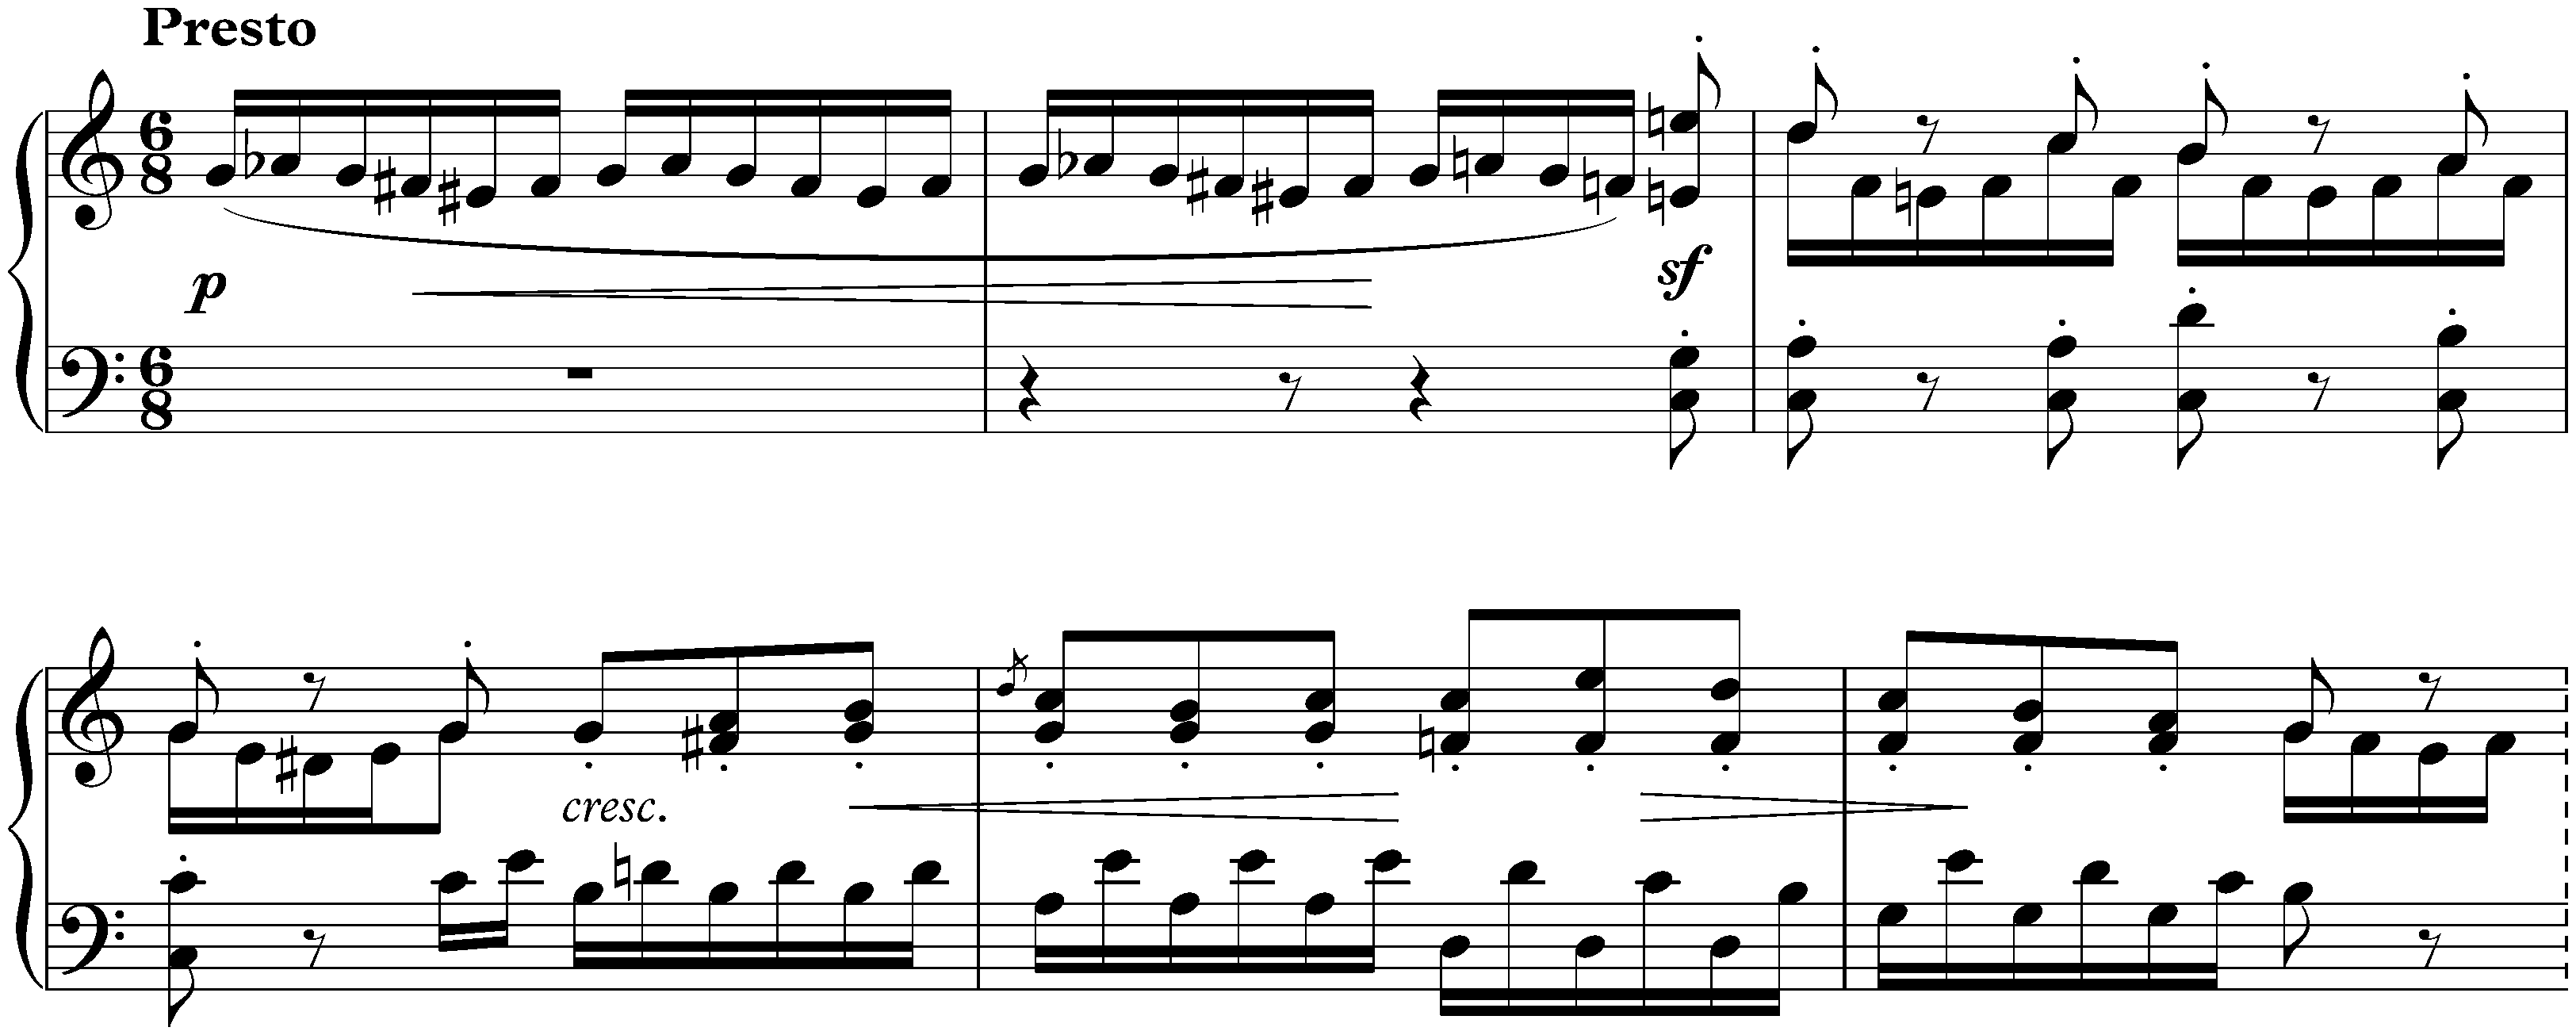 Lieder ohne Worte, Book 6, op. 67; 4. C major